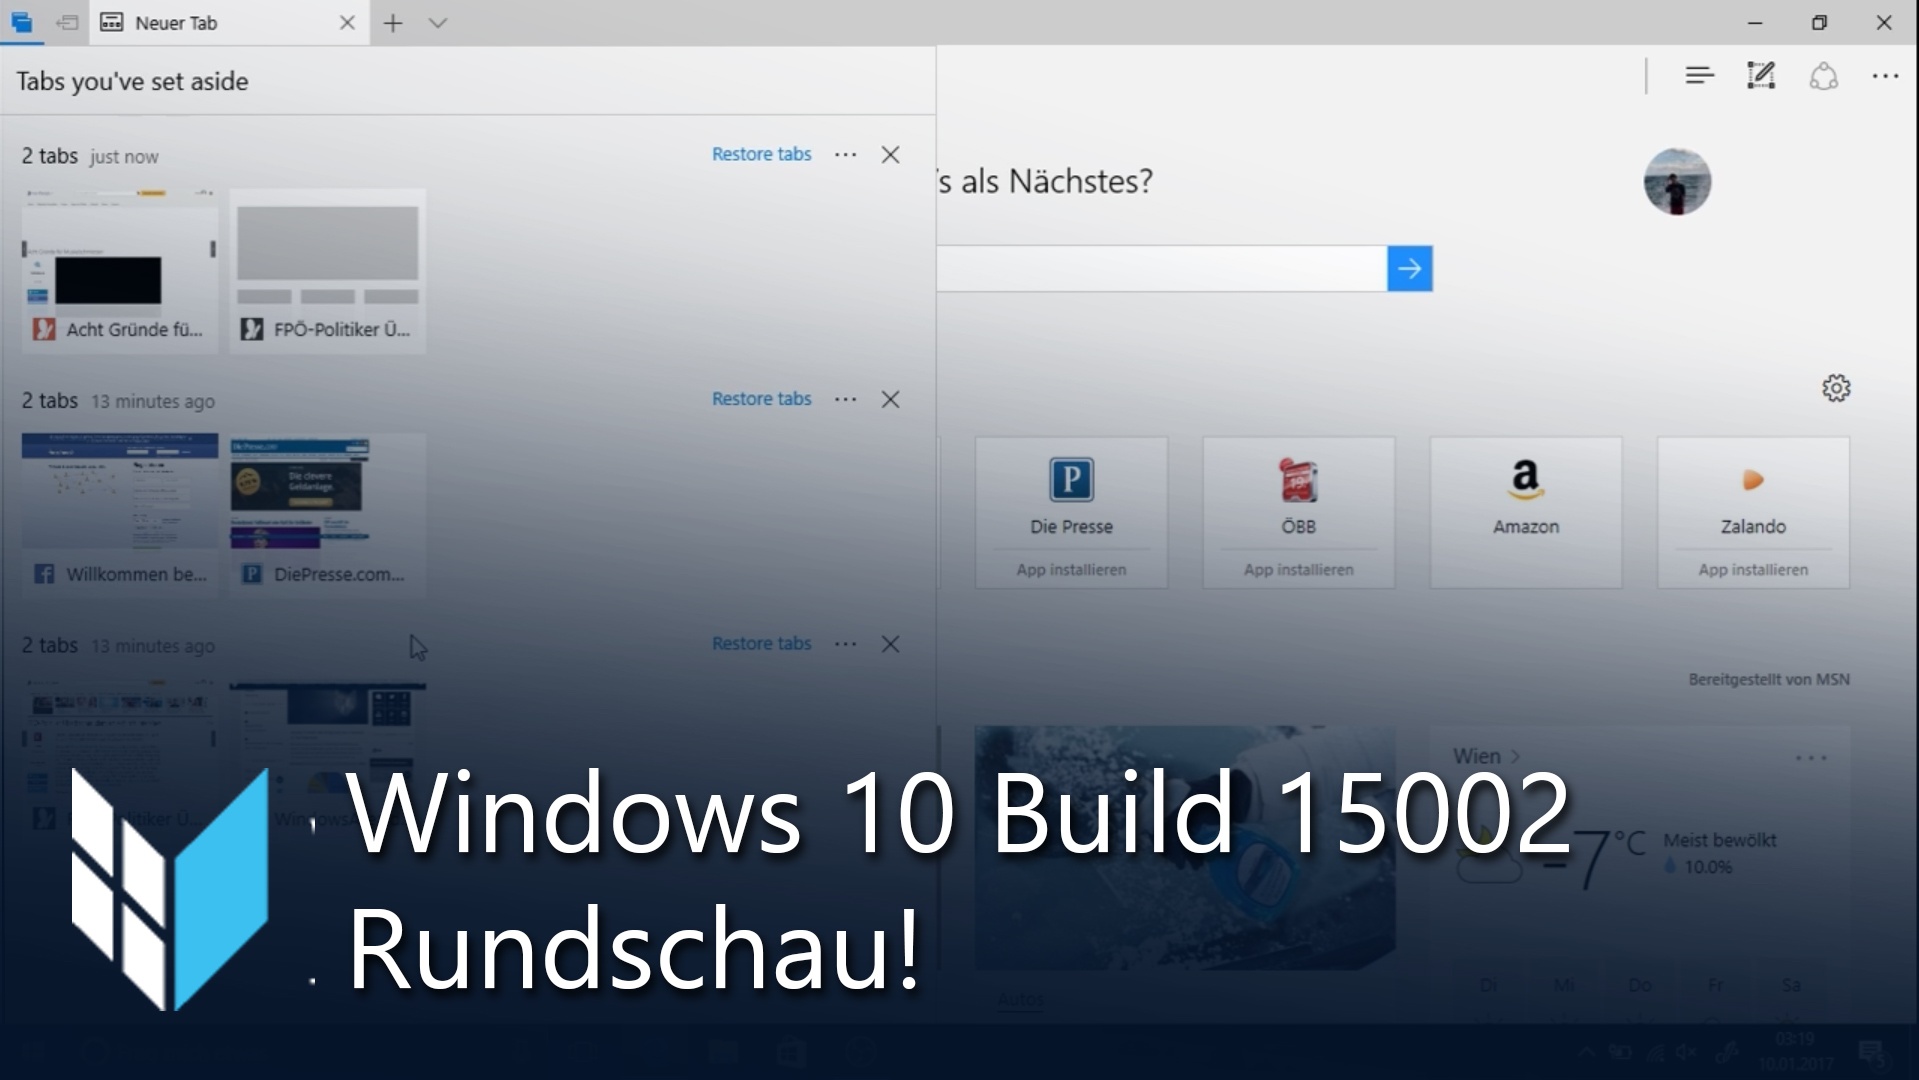 Windows 10 Build 15002: Video-Rundschau mit den neuen Funktionen